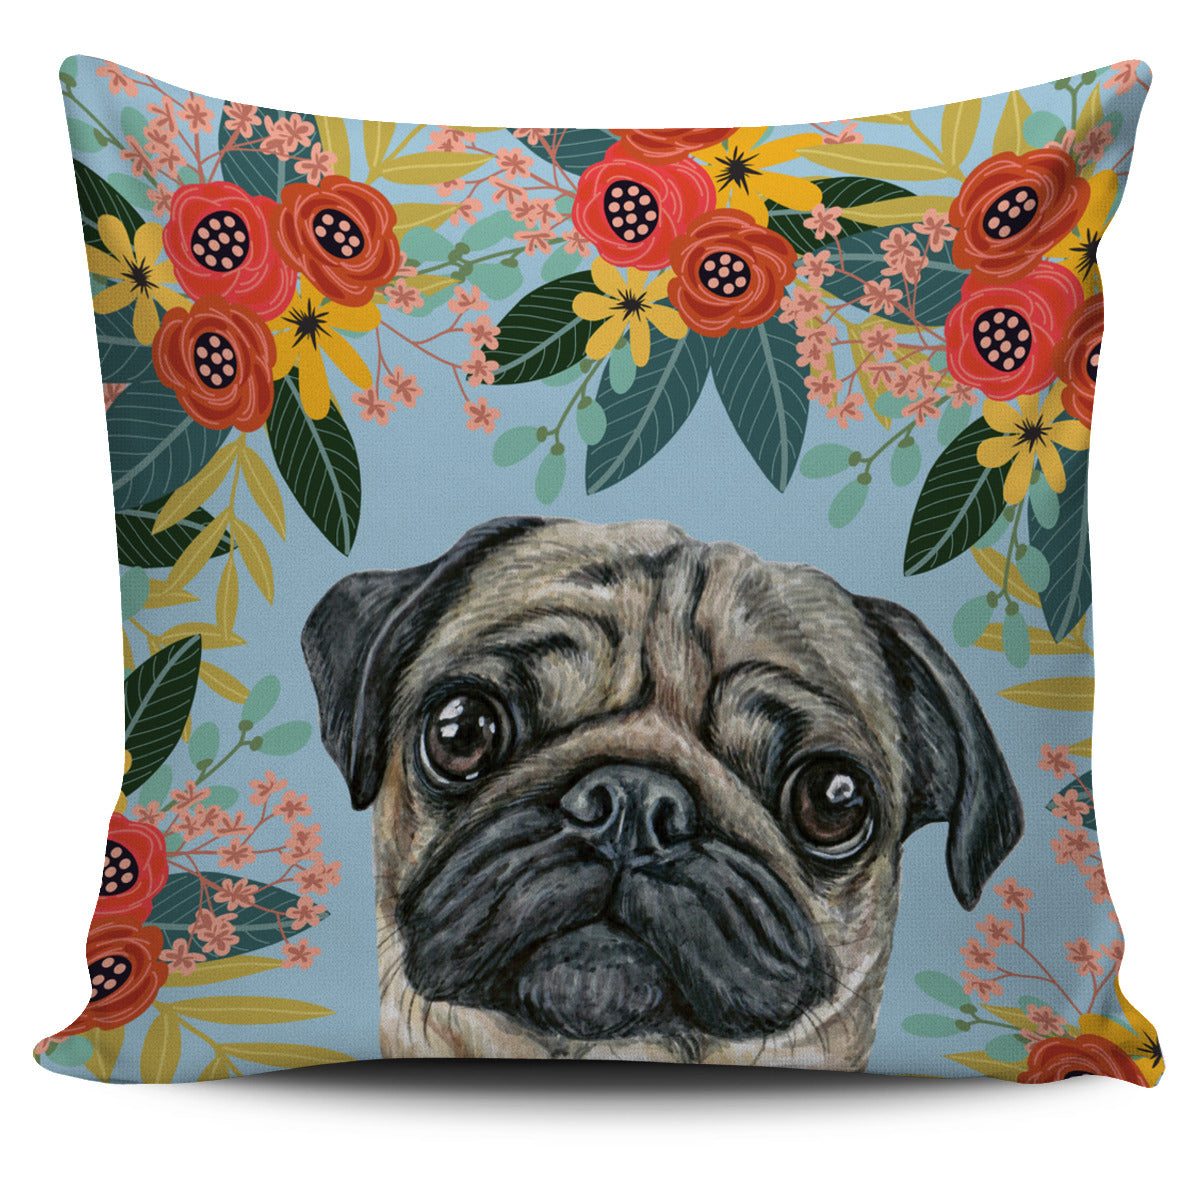 Joyful Pug Pillow Cover